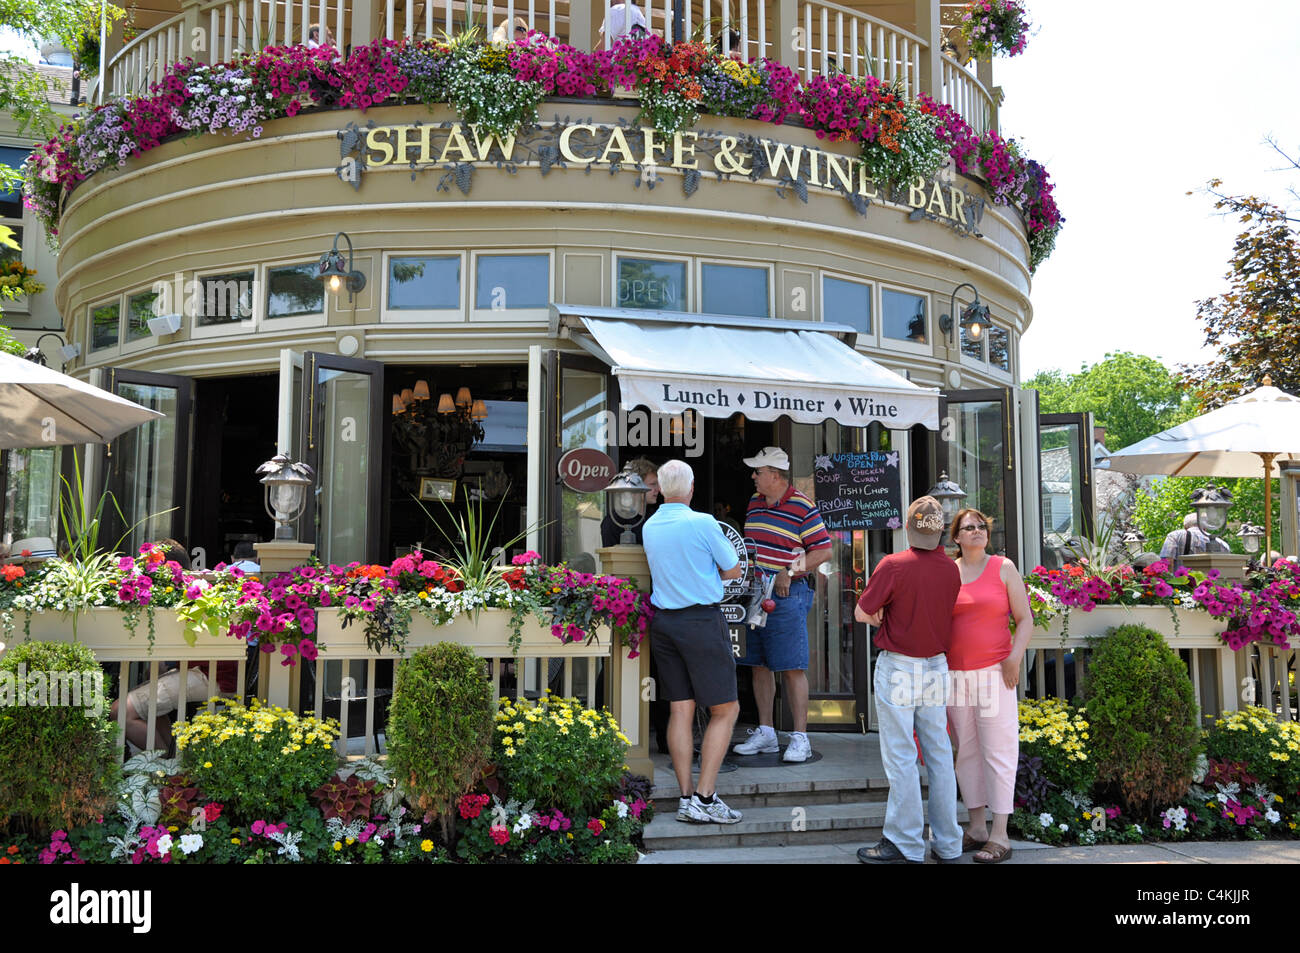 Niágara en el lago, Shaw, cafetería y bar de vinos Foto de stock